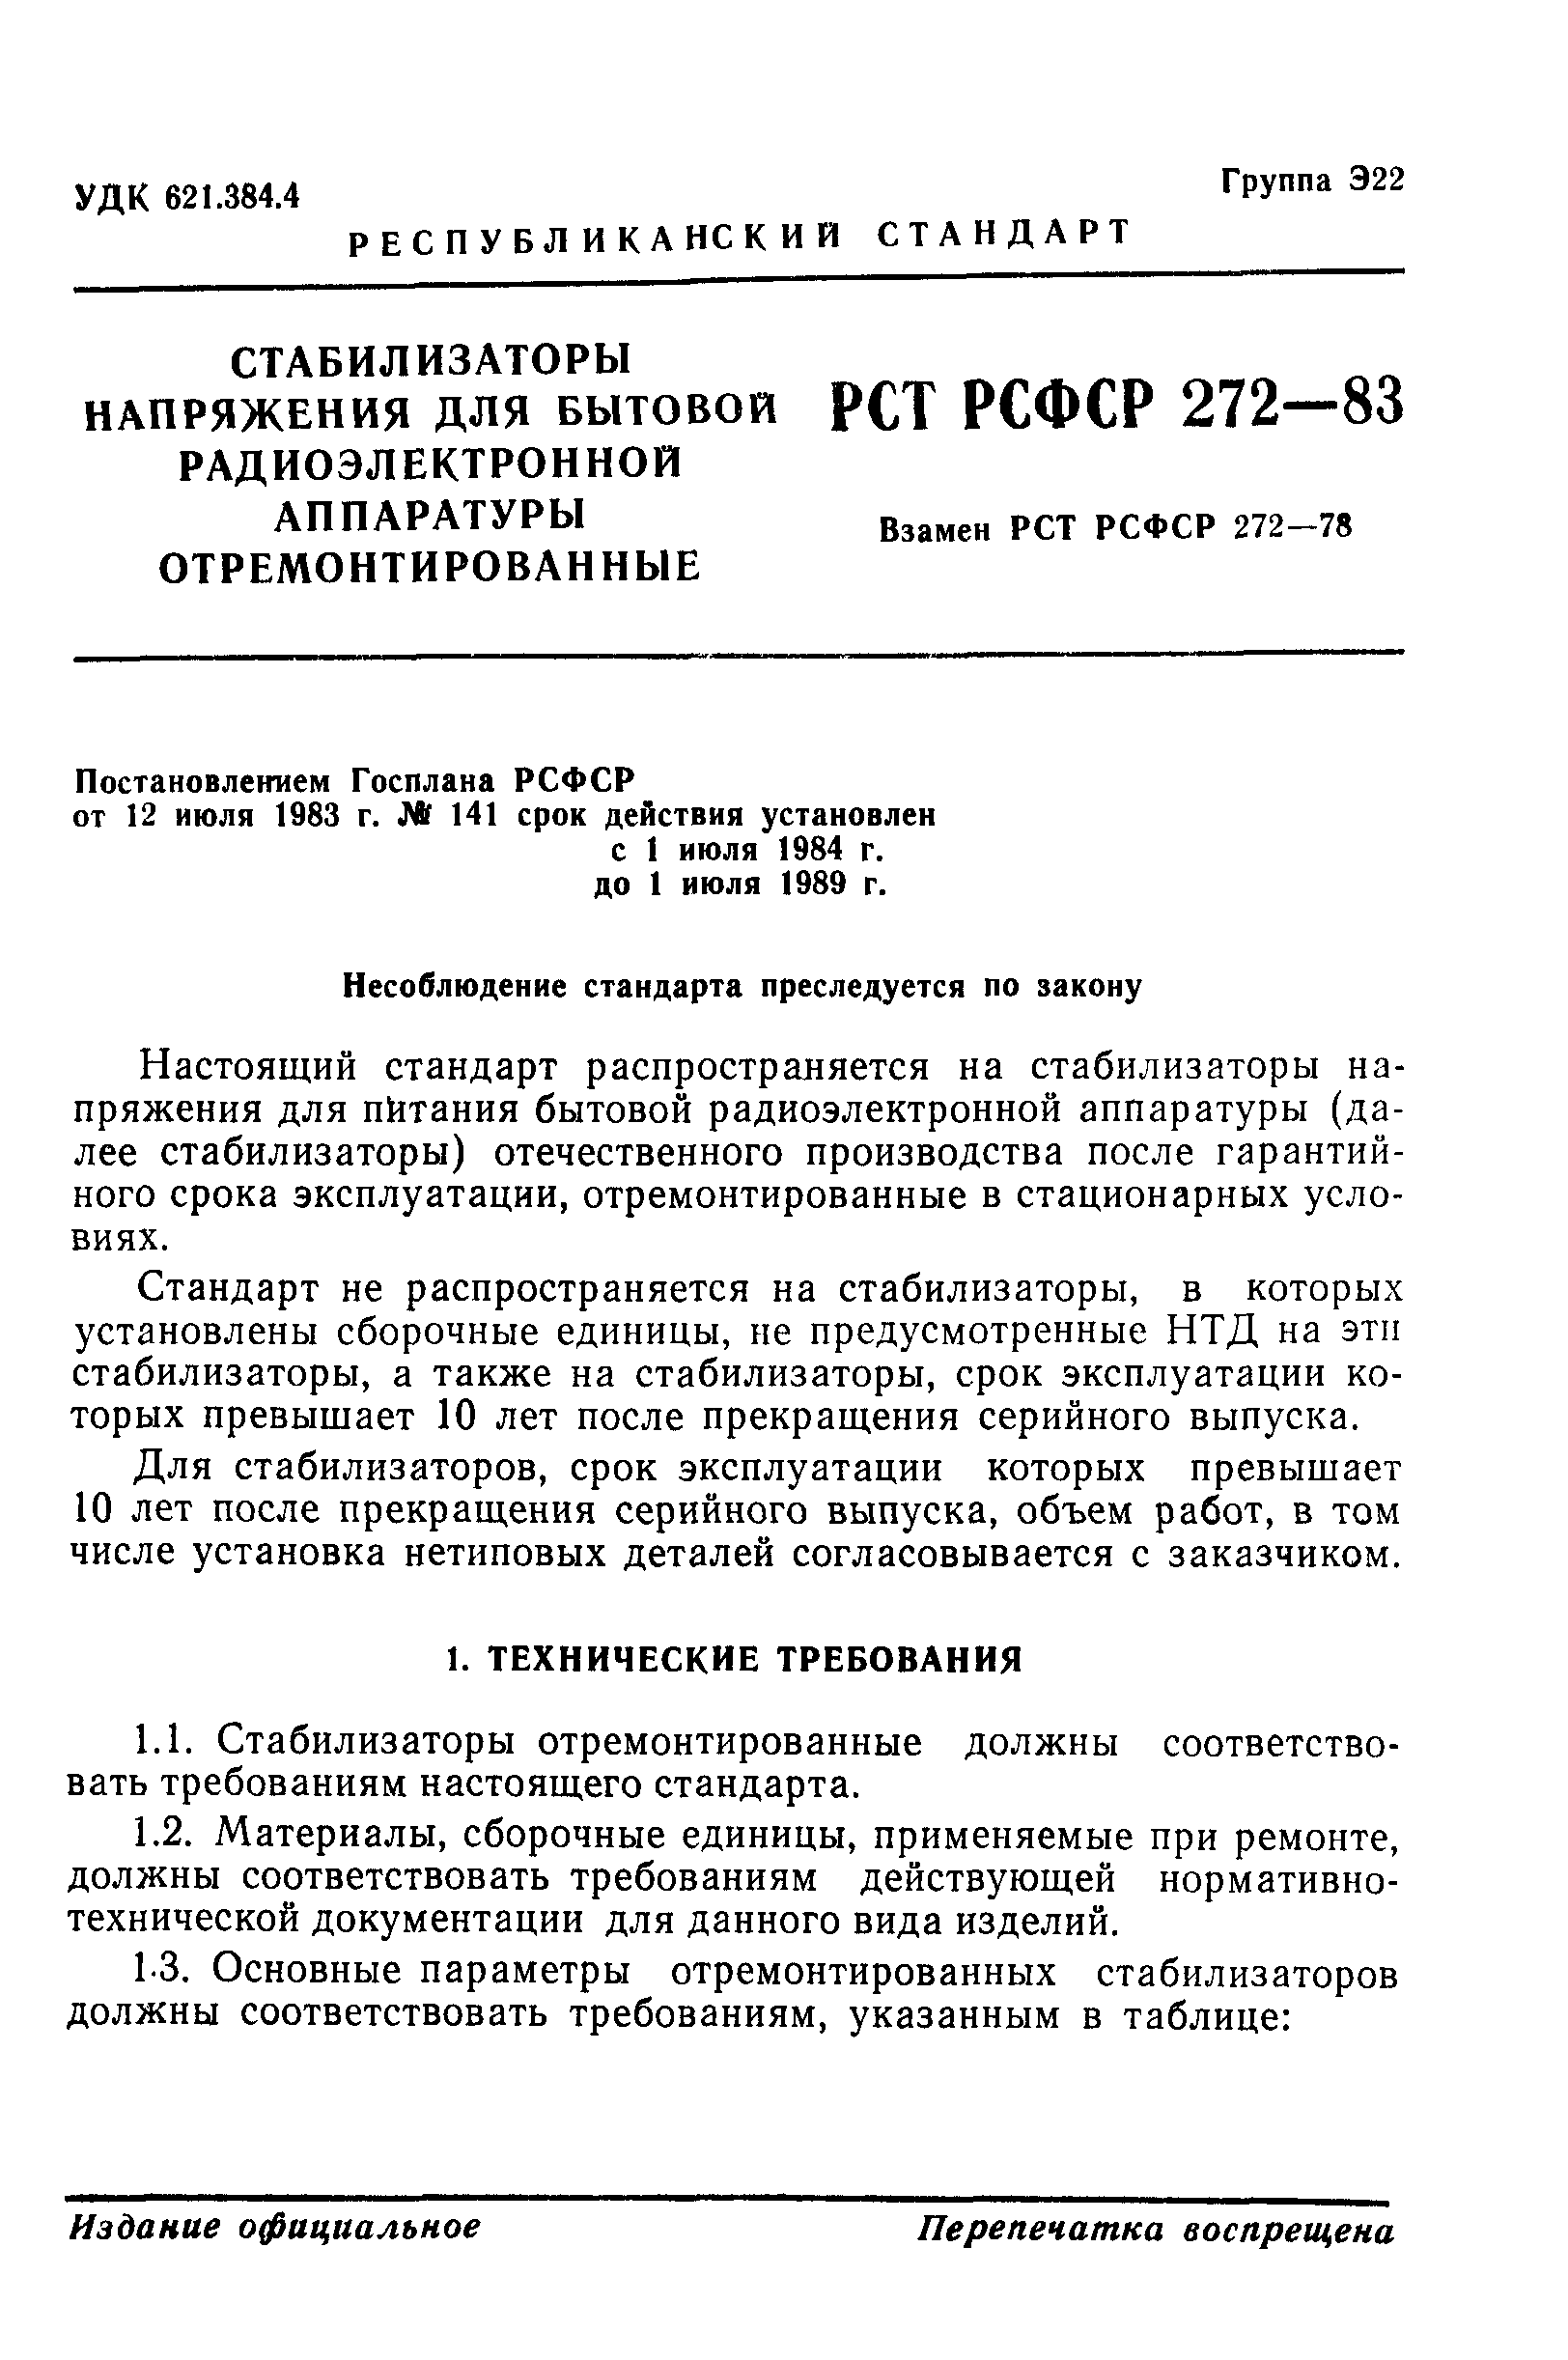 РСТ РСФСР 272-83